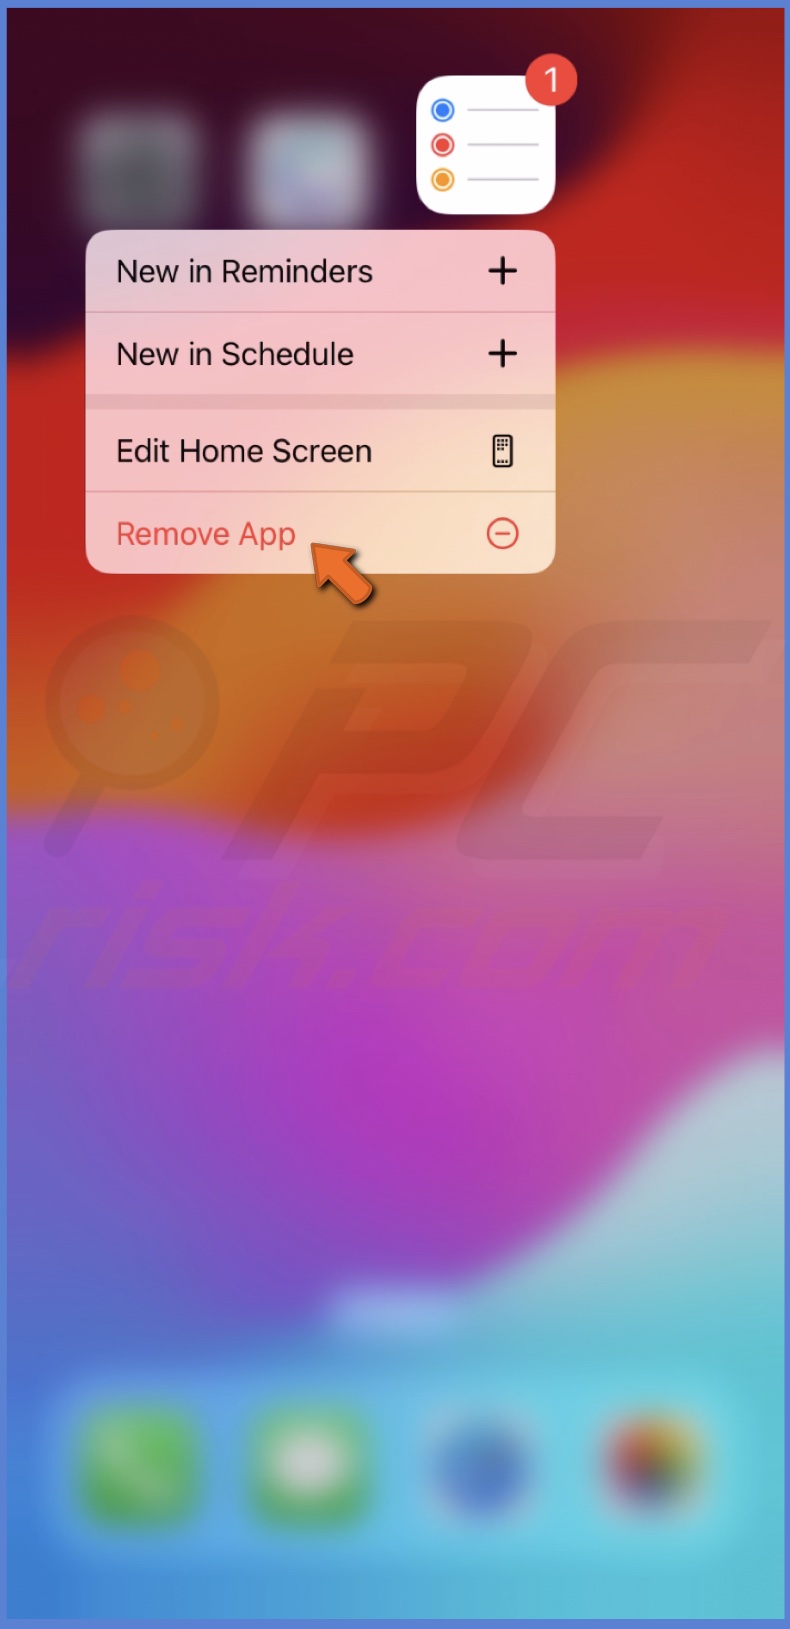 Remove app